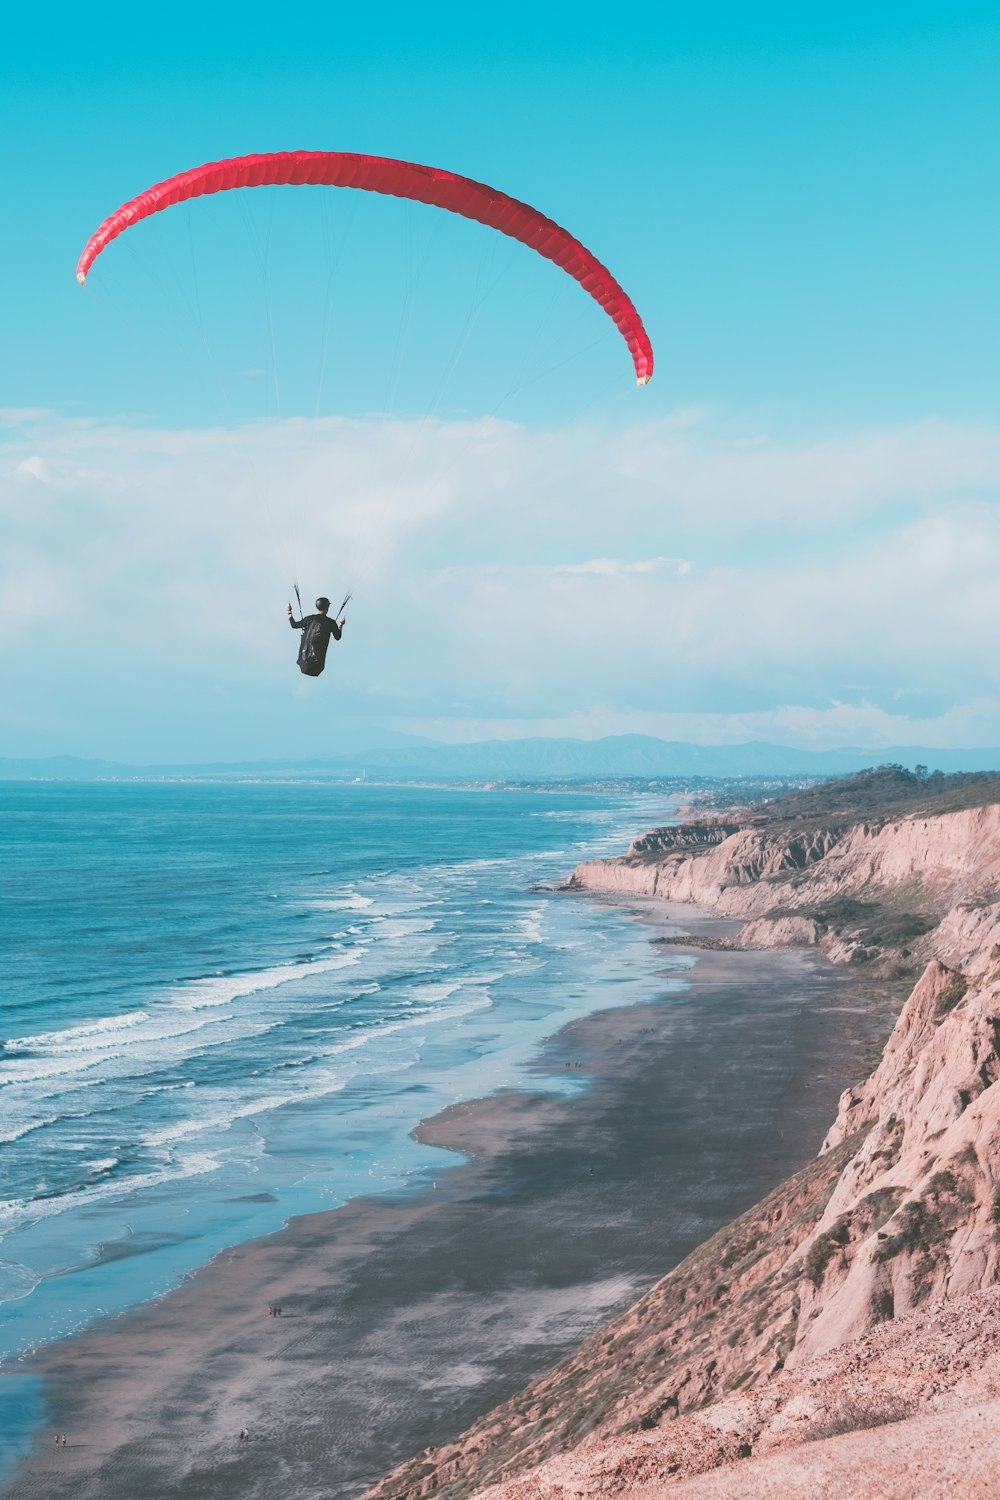 Une personne fait du parachute ascensionnel au-dessus de l’océan par une journée ensoleillée